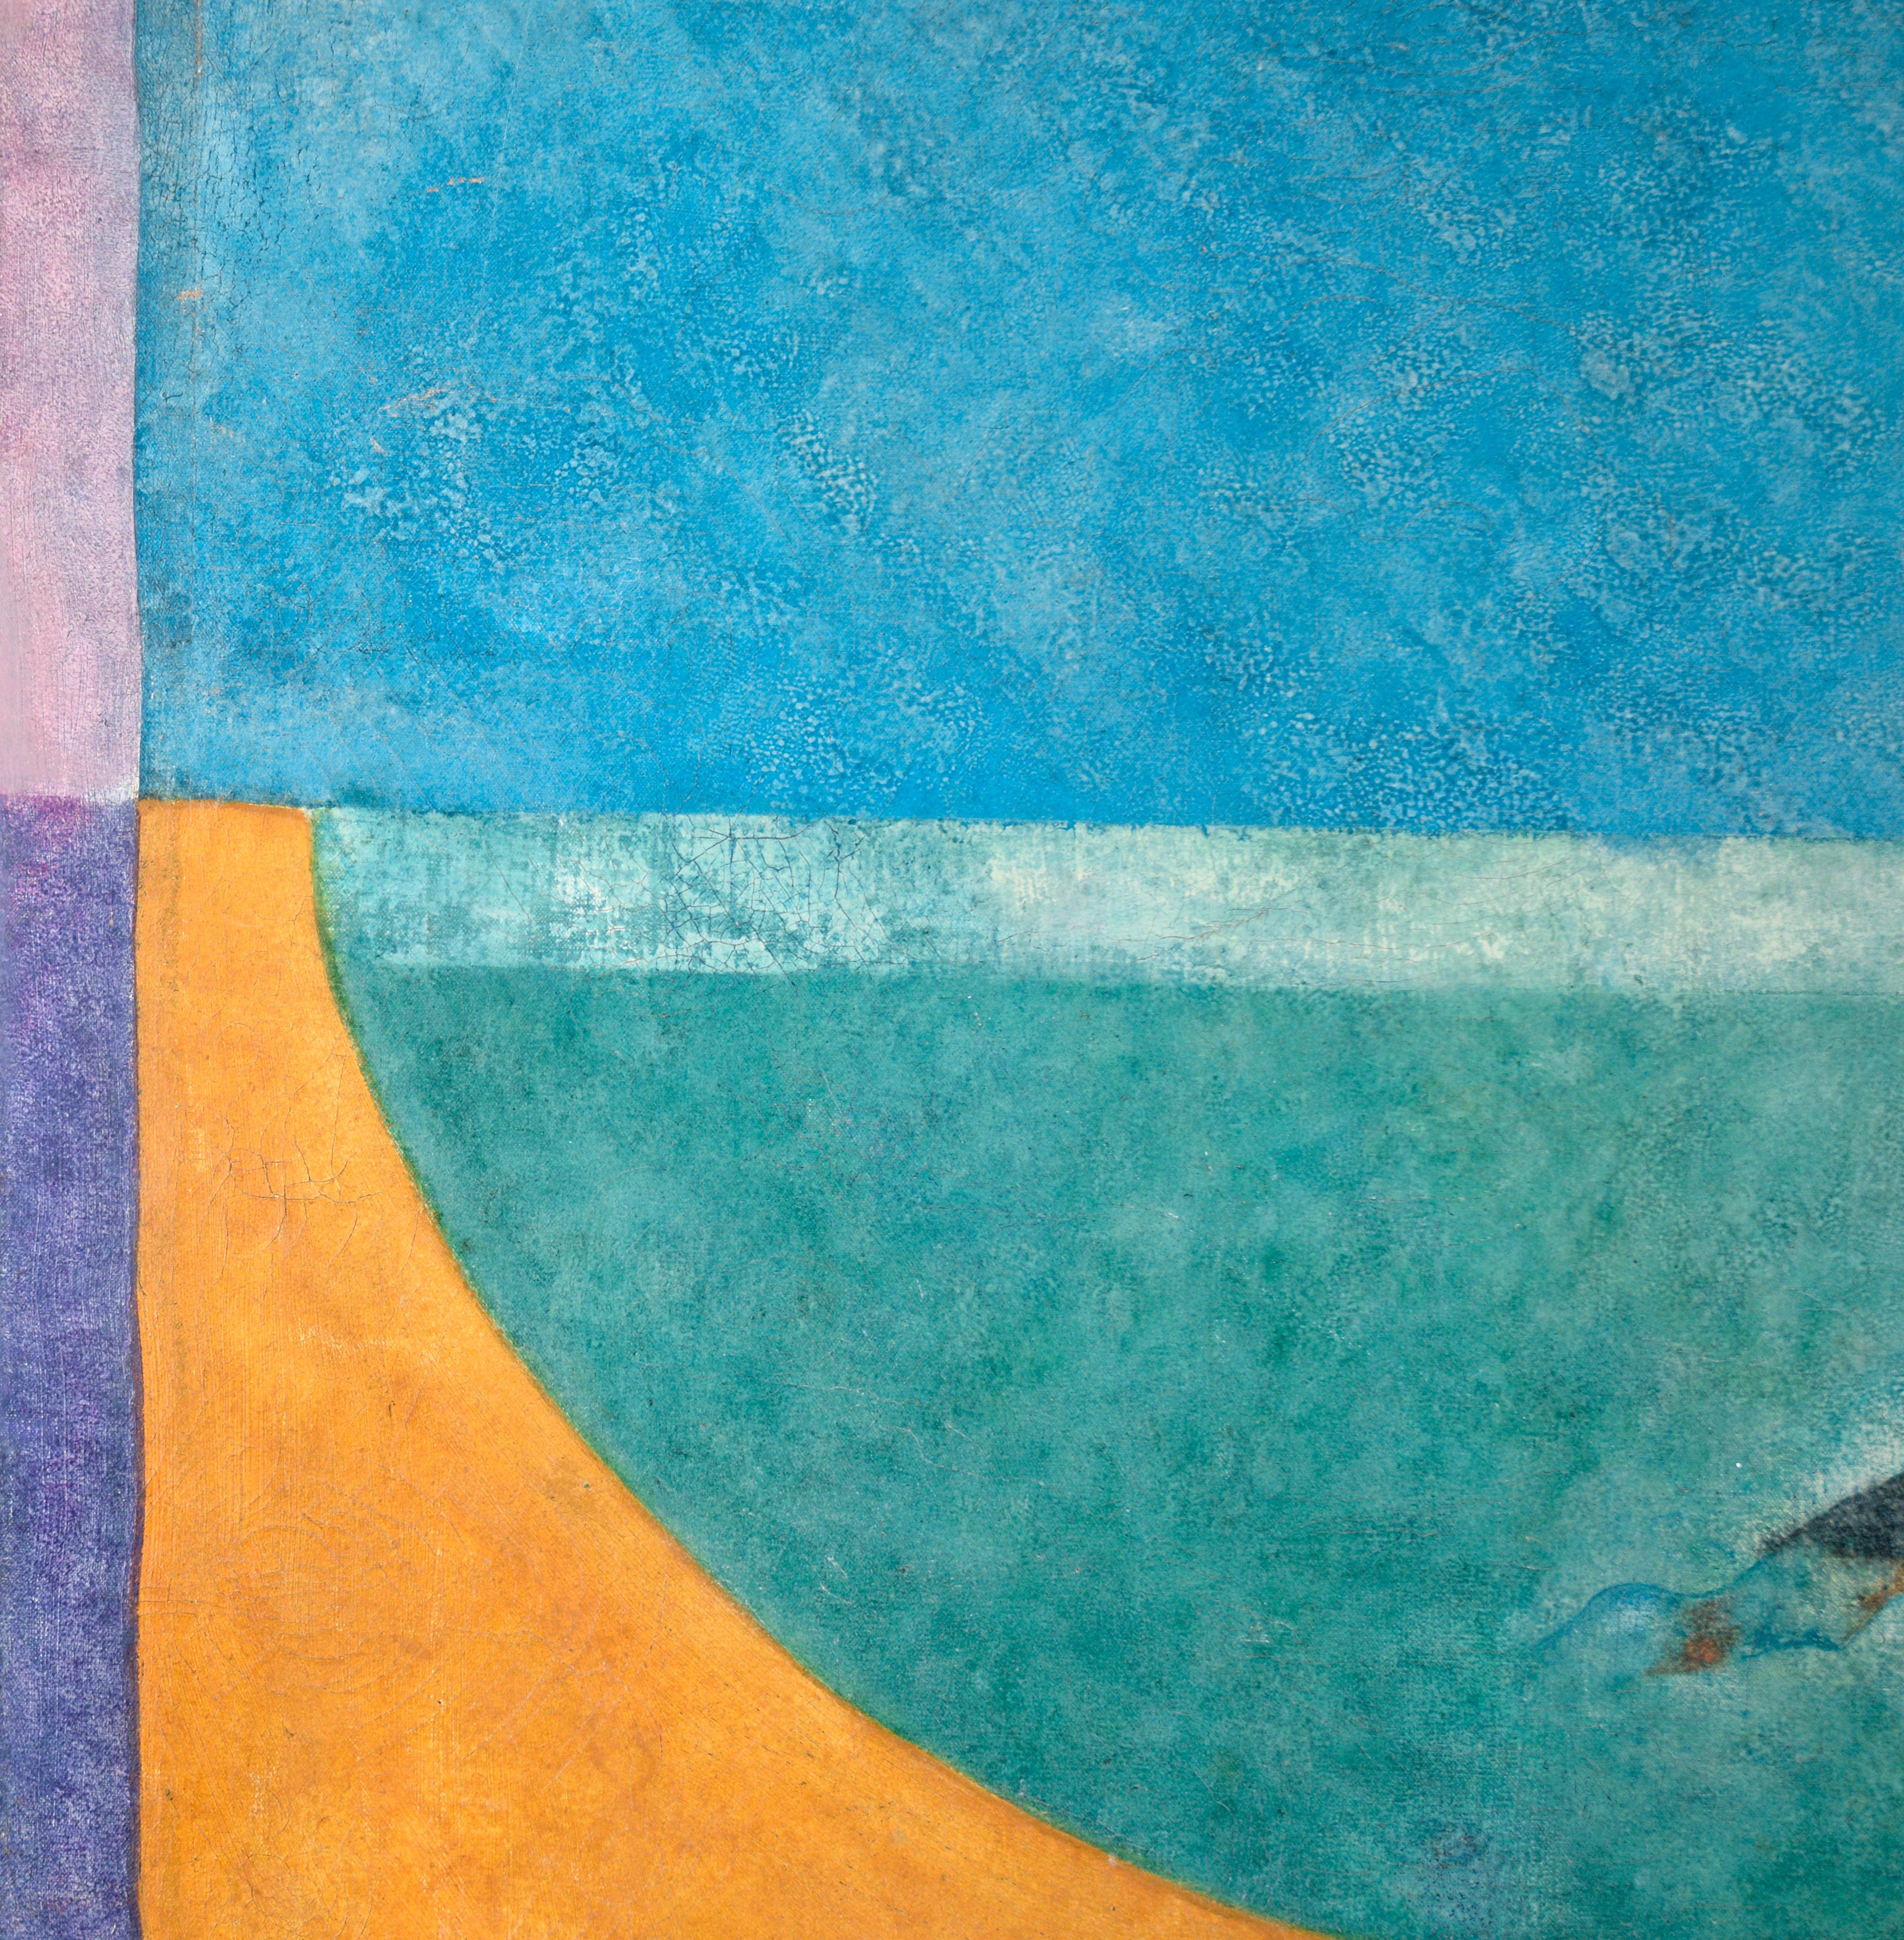 Nager au coucher du soleil - Paysage surréaliste avec deux nageurs à l'huile sur toile

Œuvre minimaliste et surréaliste colorée de John McDonnell. Deux personnes nagent dans une étendue d'eau, représentée dans un style audacieux et minimaliste. Le